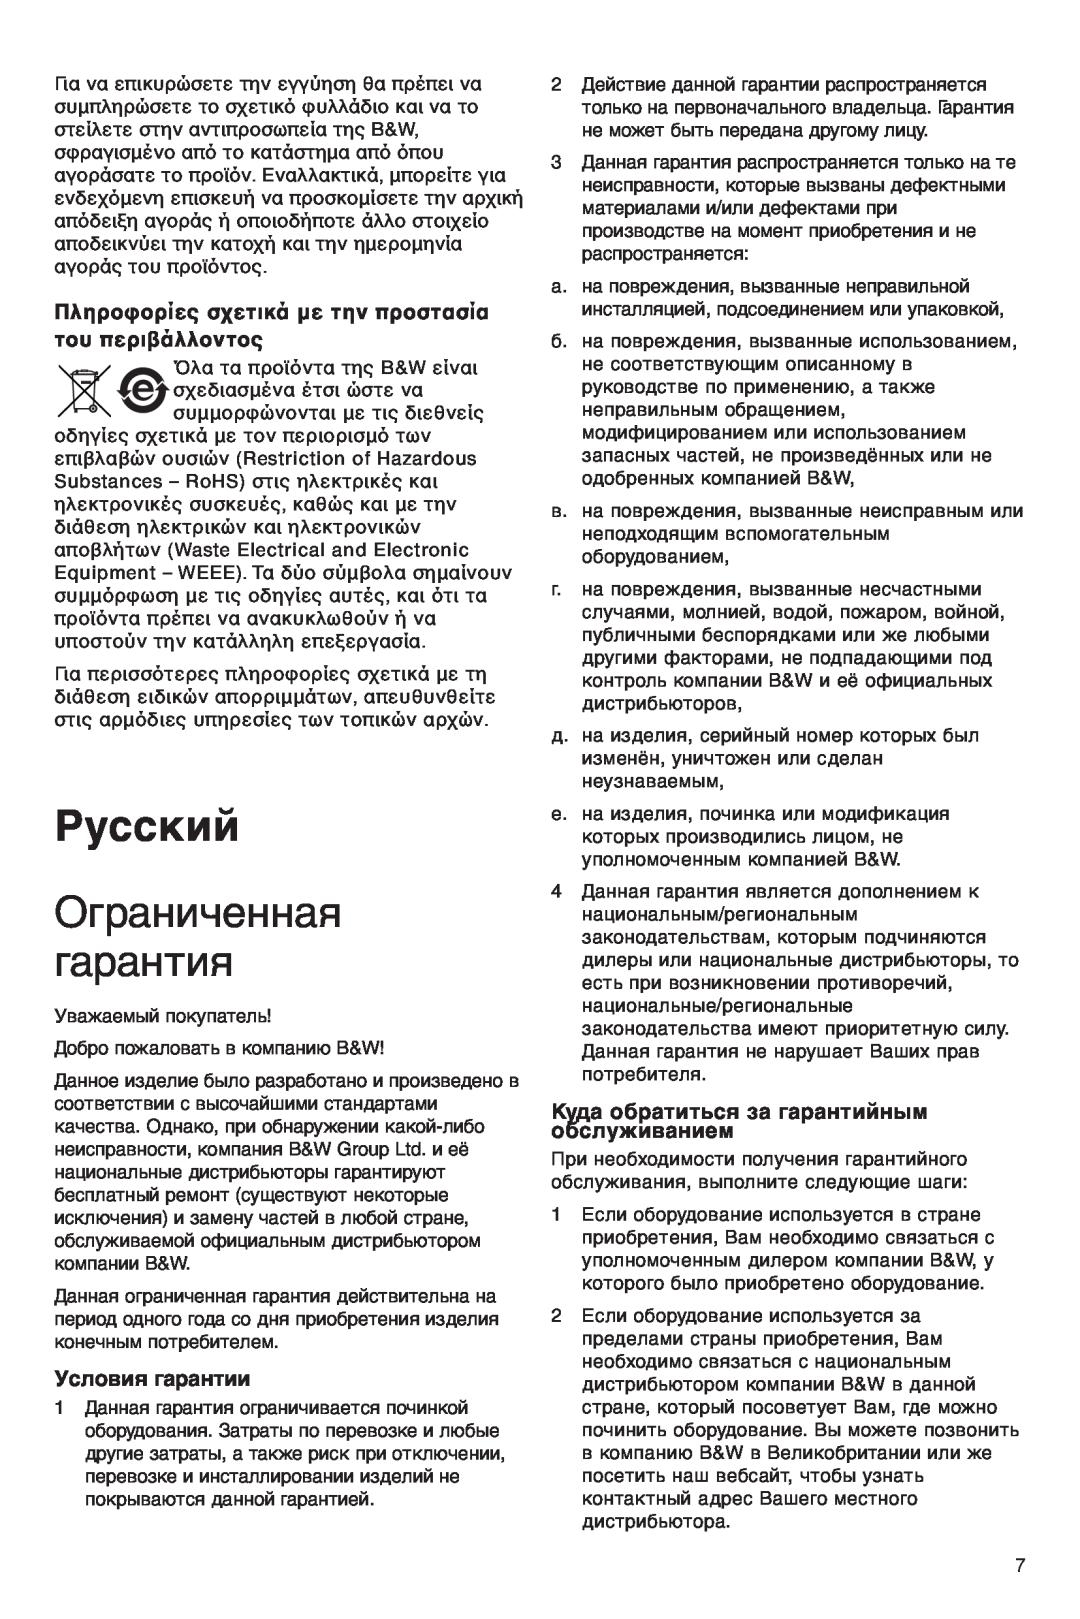 Bowers & Wilkins VM6 manual Русский, Ограниченная гарантия, Условия гарантии, Куда обратиться за гарантийным обслуживанием 